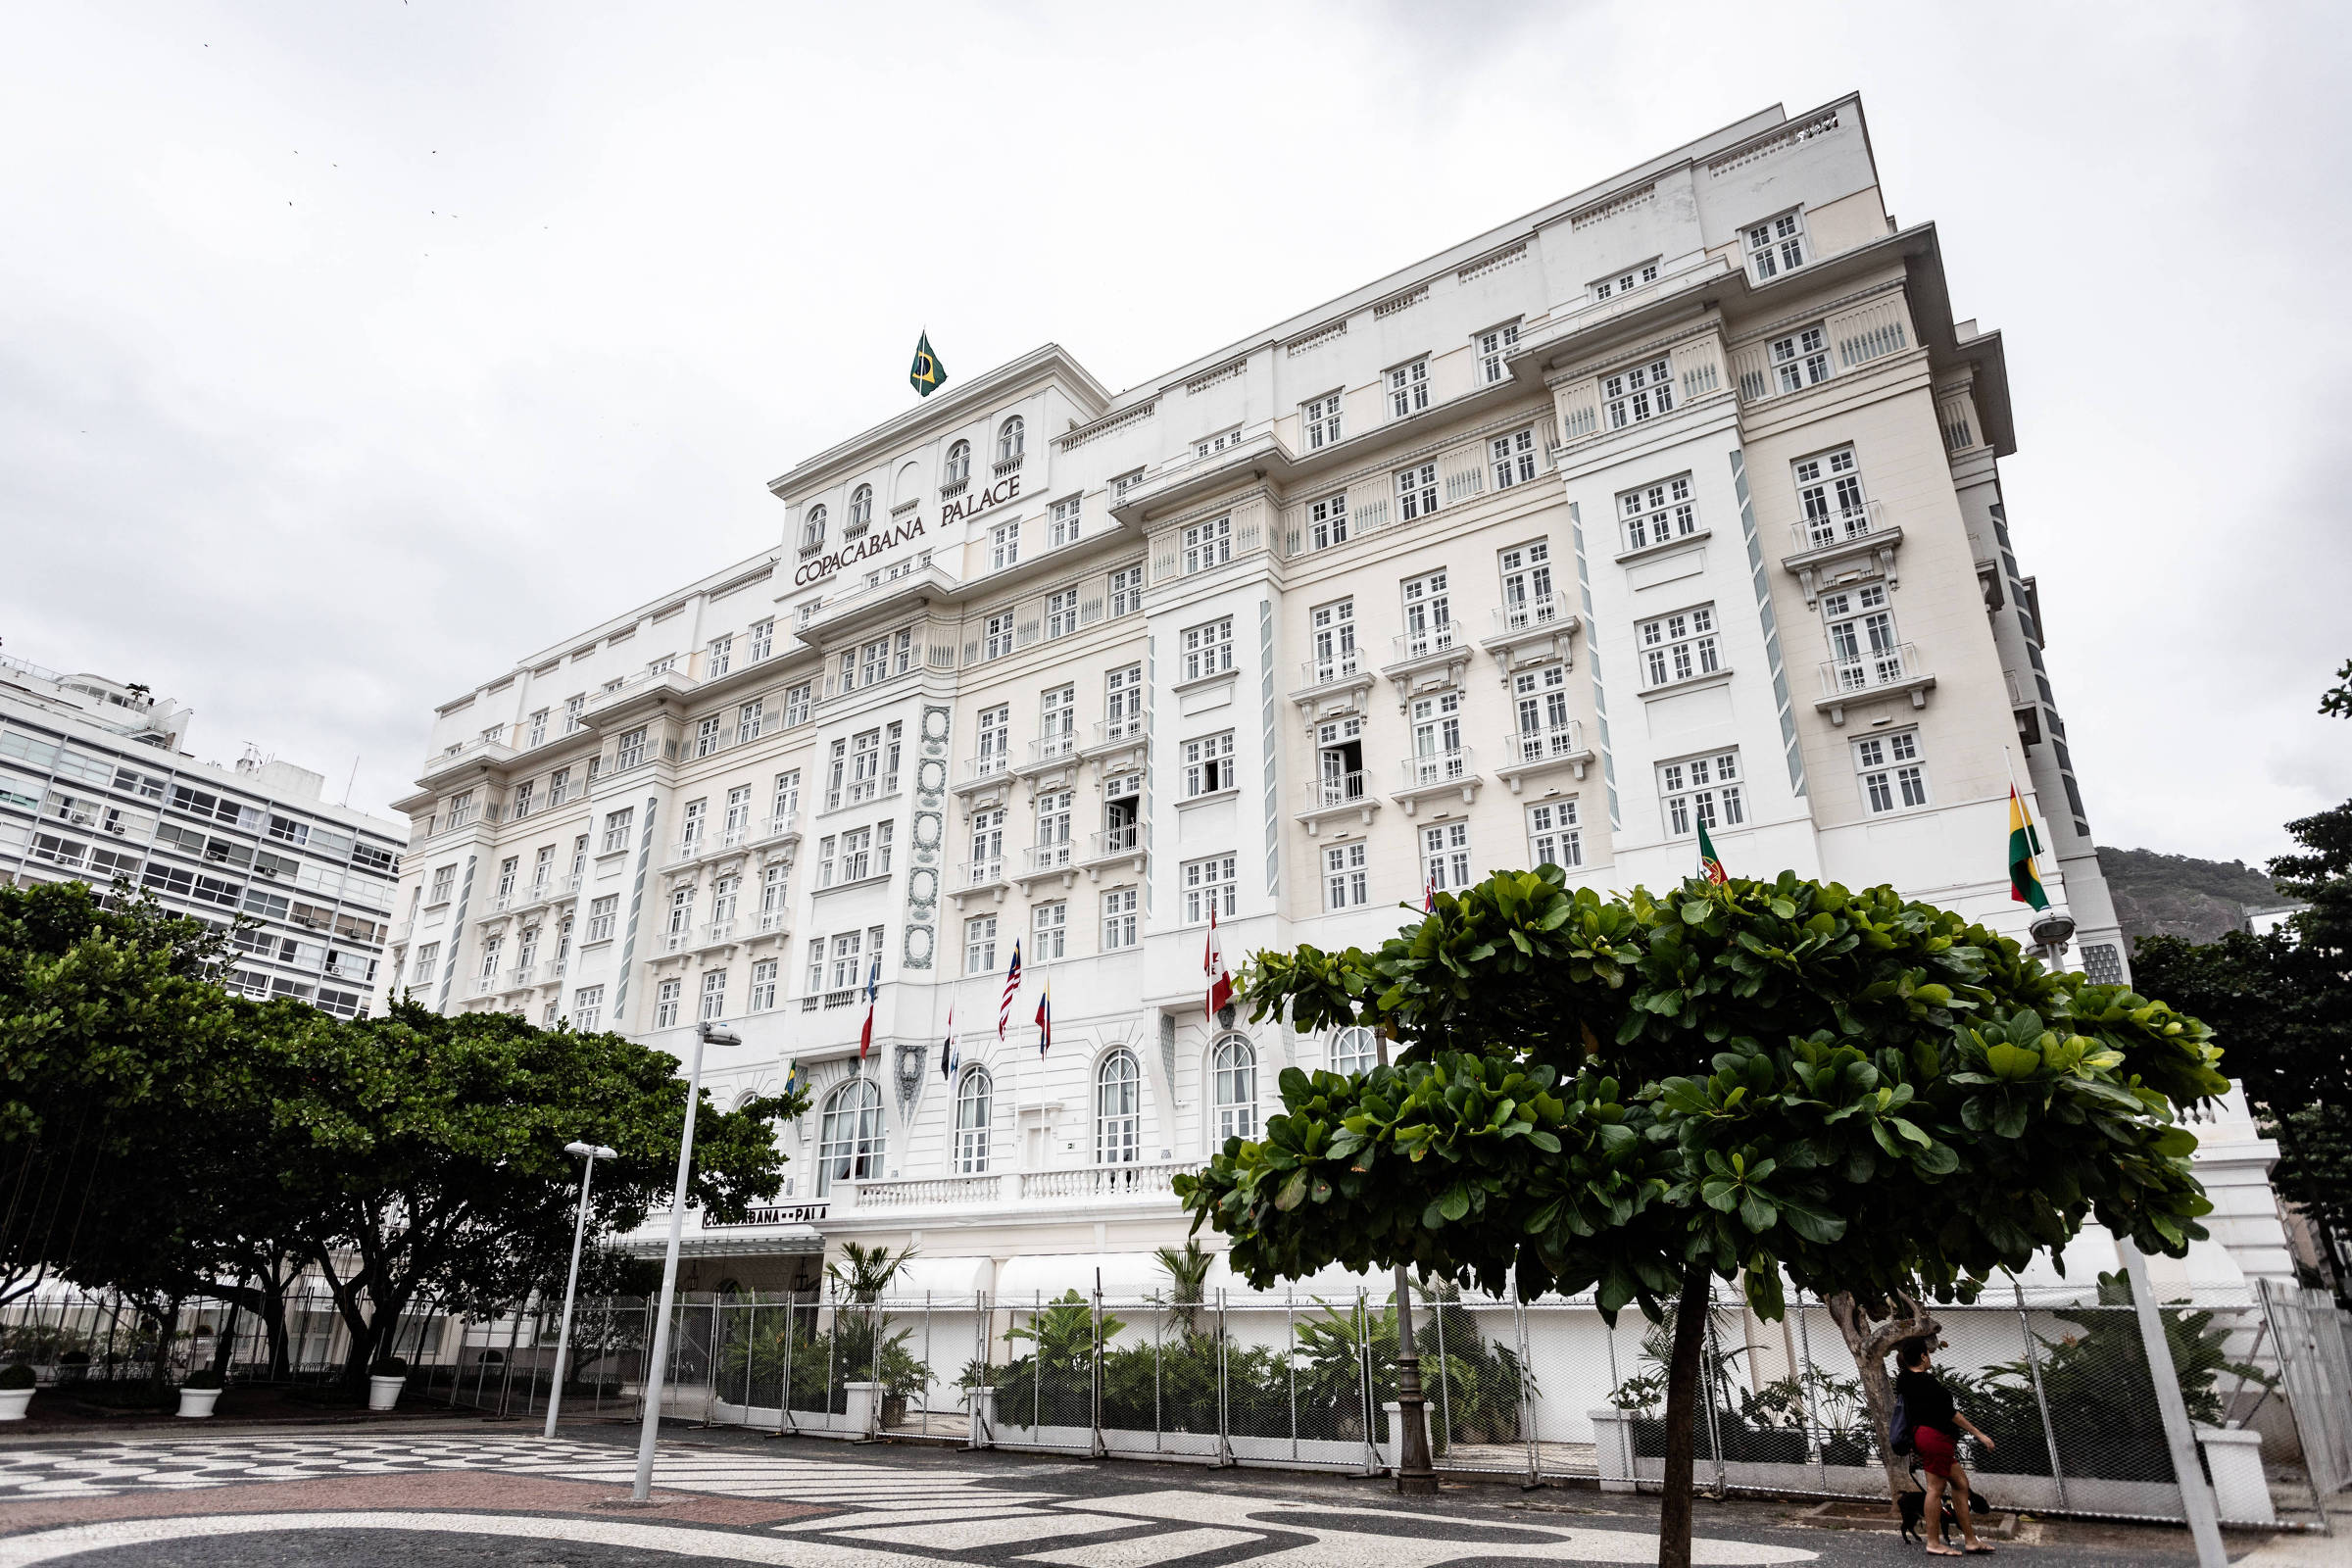 Copacabana Palace fecha as portas pela primeira vez em 97 anos devido ao  coronavírus - 10/04/2020 - Cotidiano - Folha